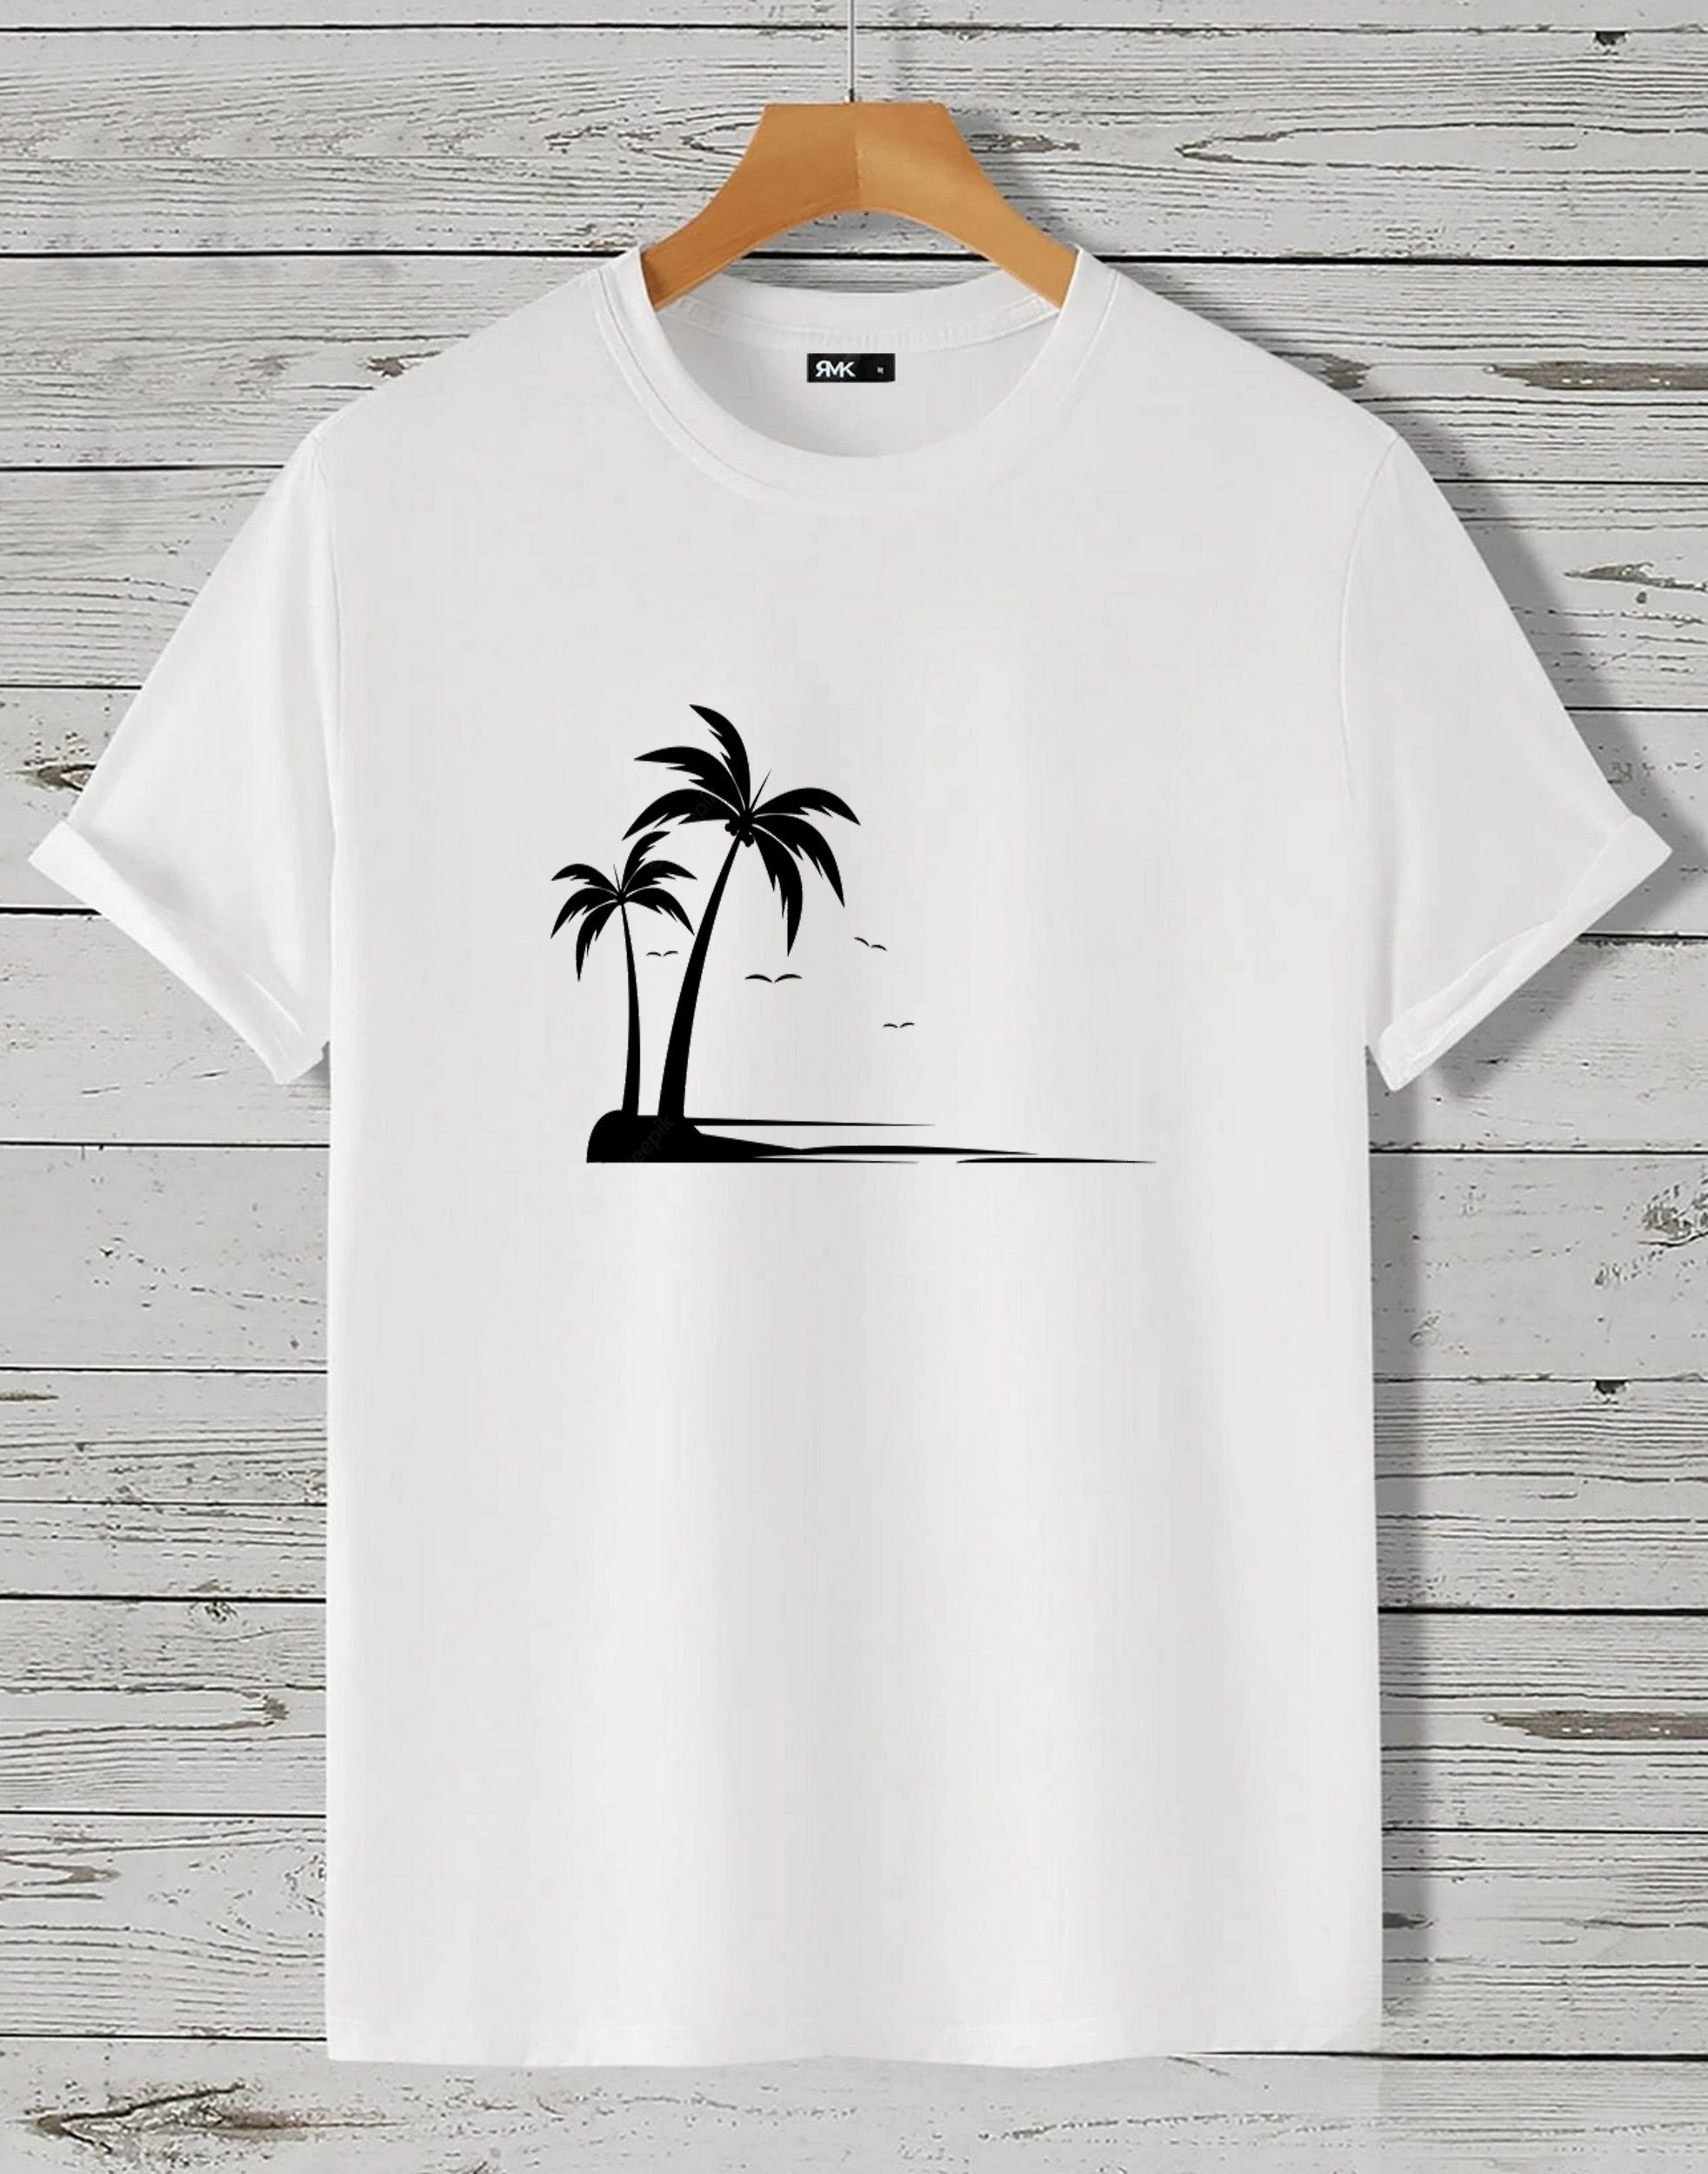 in Baumwolle aus "Palme Herren Insel Beach" Motiv T-Shirt RMK Shirt Unifarbe, Rundhals kurzarm The